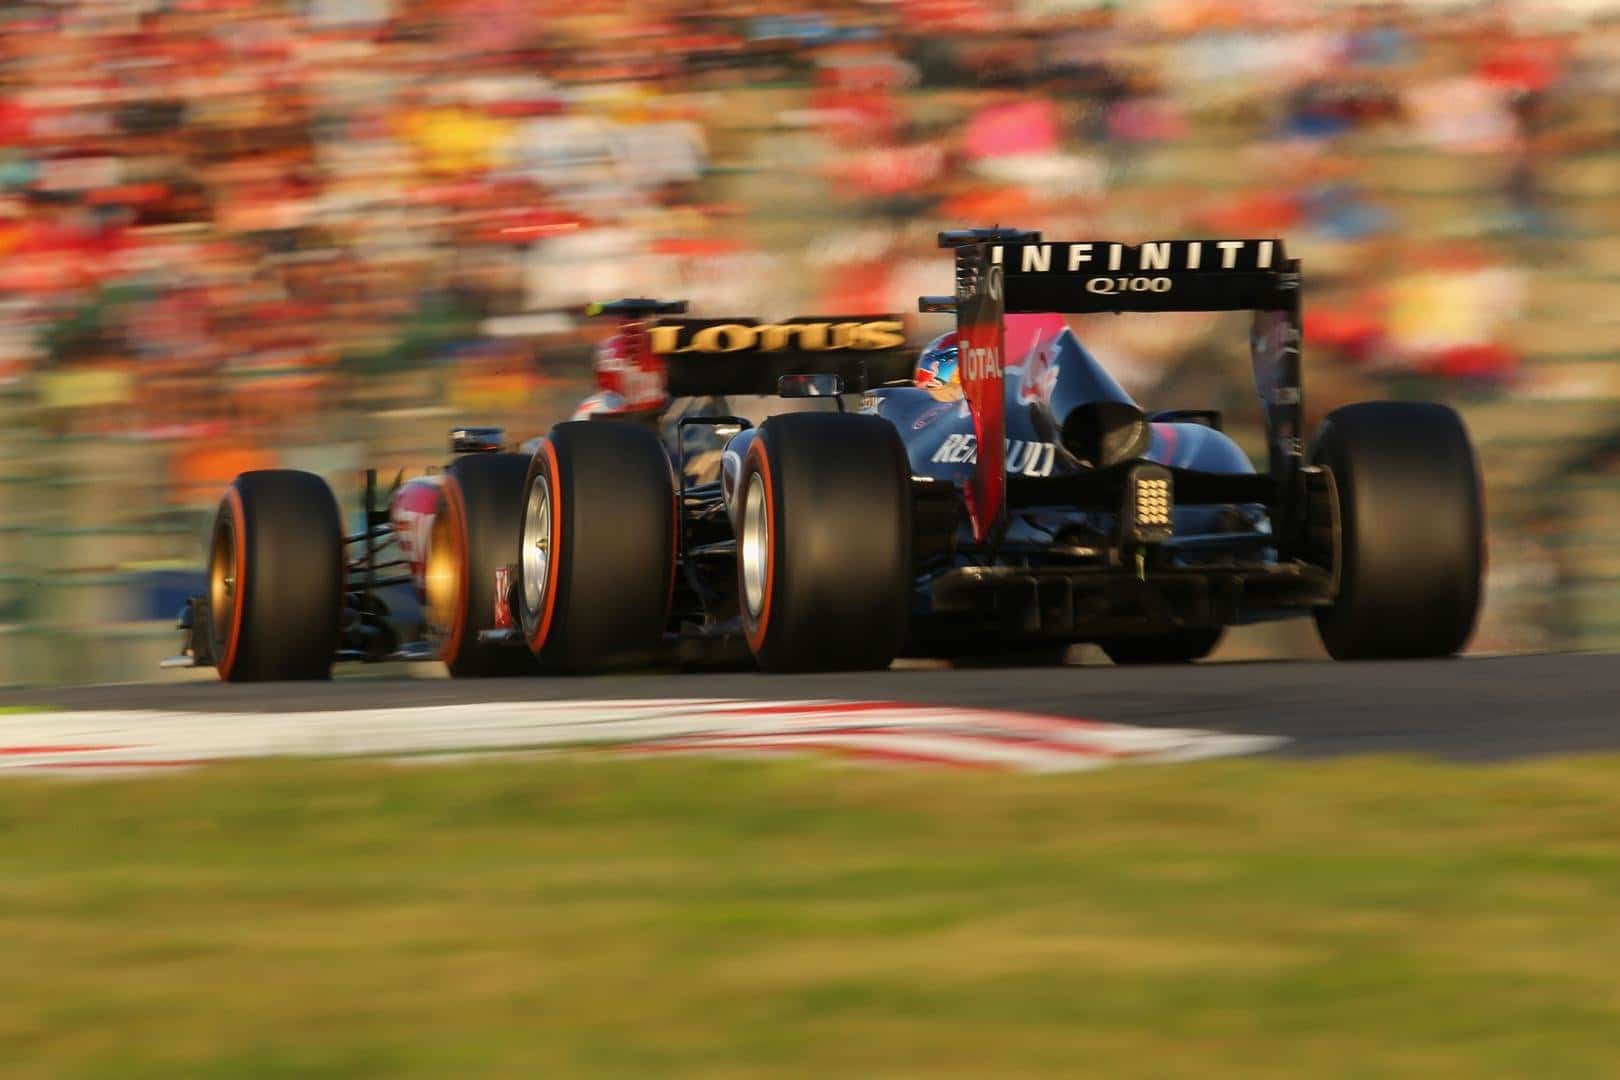 Formule 1 2013 - Japan Grand Prix Highlights